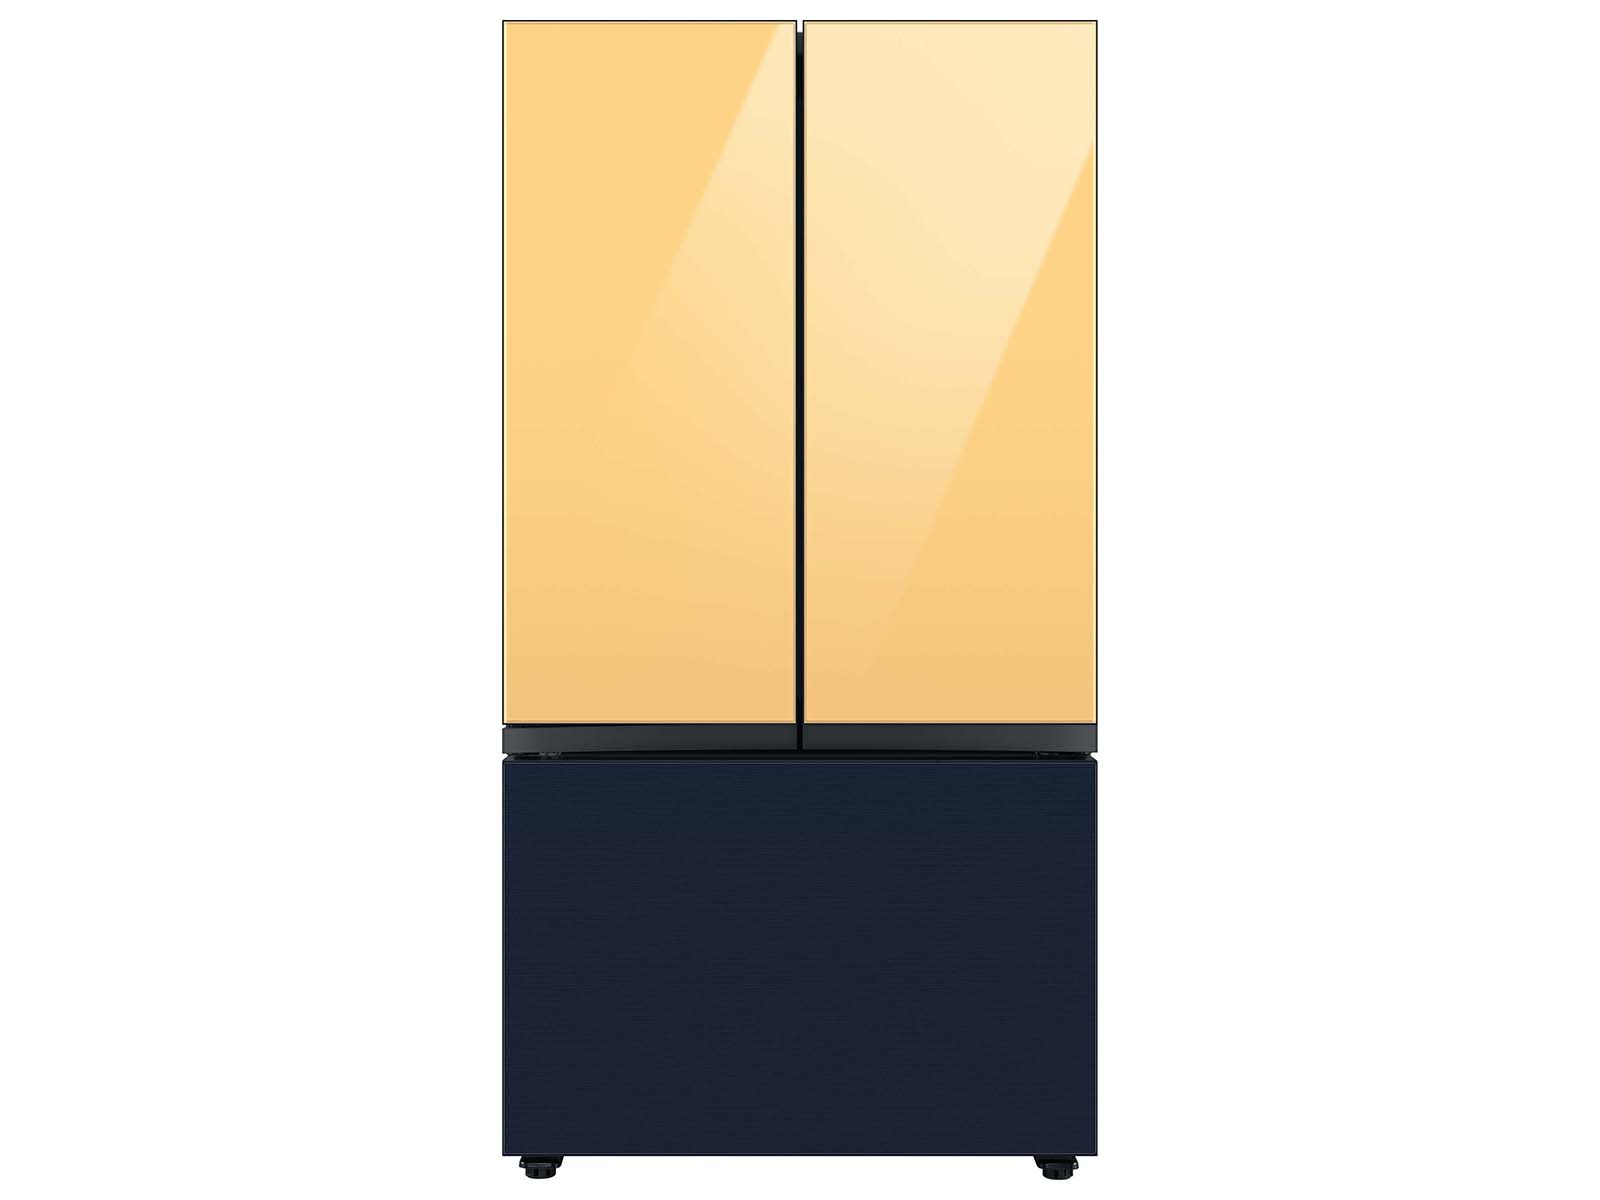 Bespoke-3-Door-French-Door-Refrigerator-Panel-in-Navy-Steel-Bottom ...